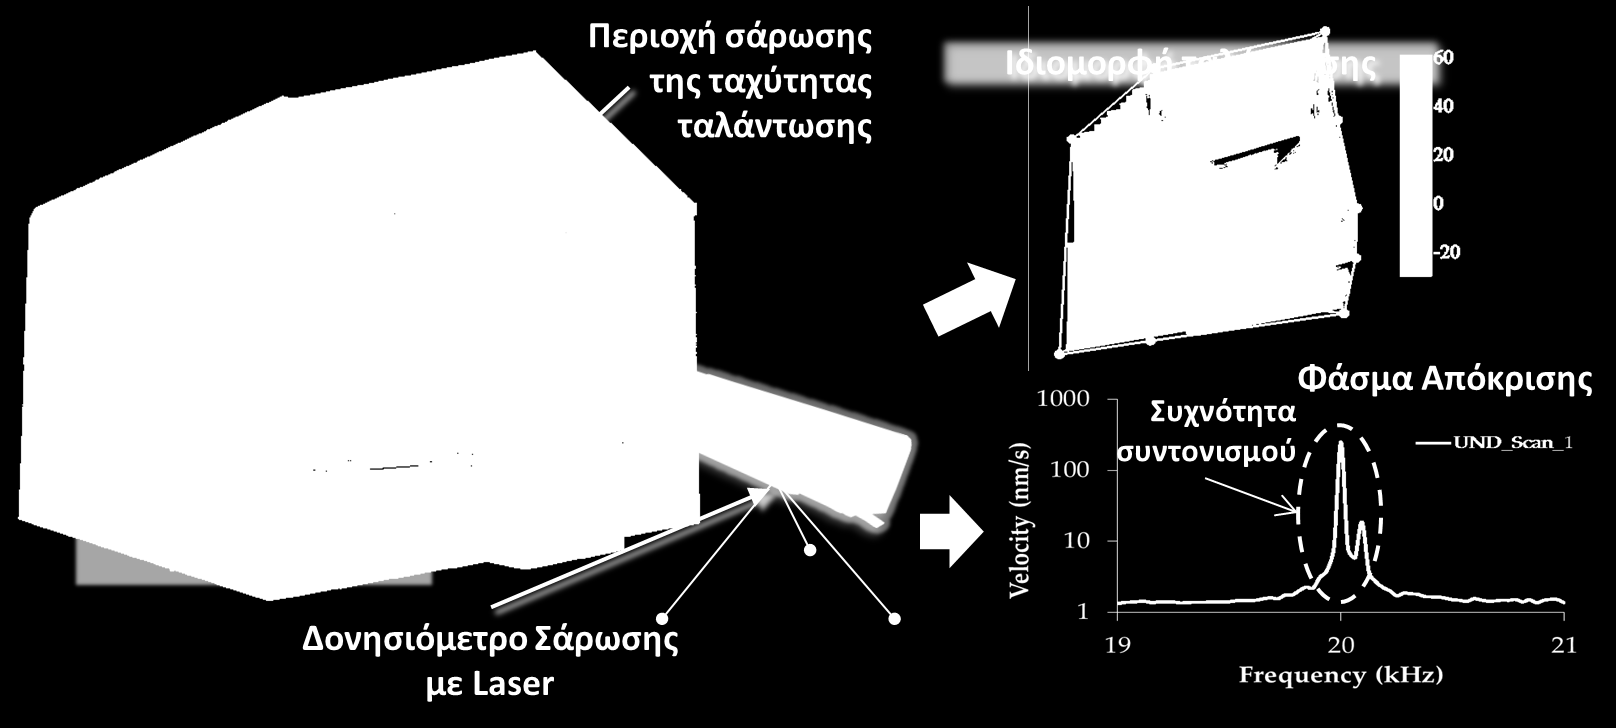 5. Δονησιομετρία Σάρωσης με Laser - LSV (Laser